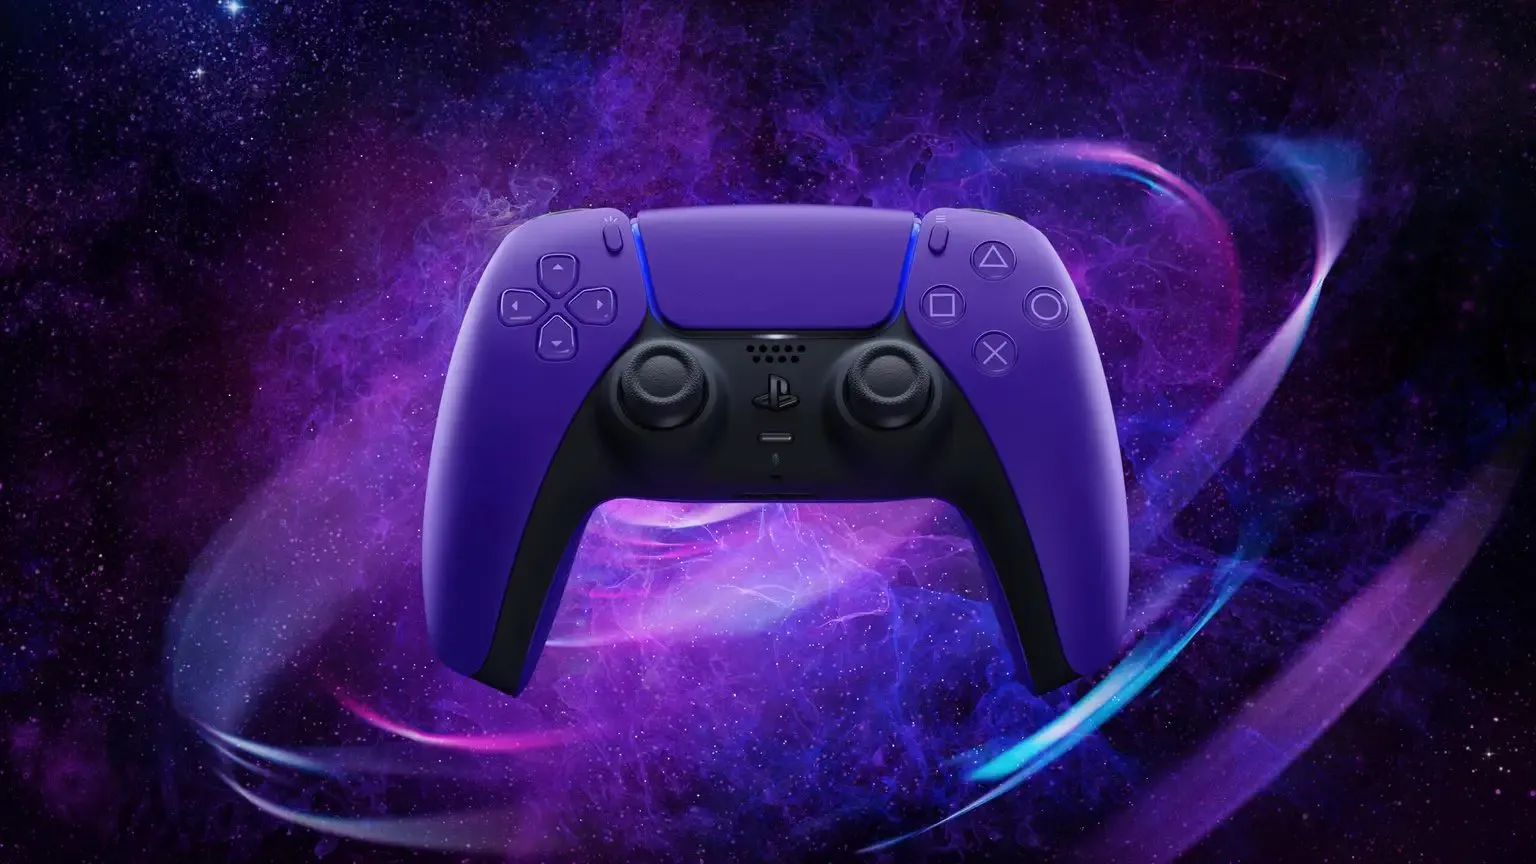 Controle Joystick PS5 Sem Fio DualSense Original, Galatic Purple